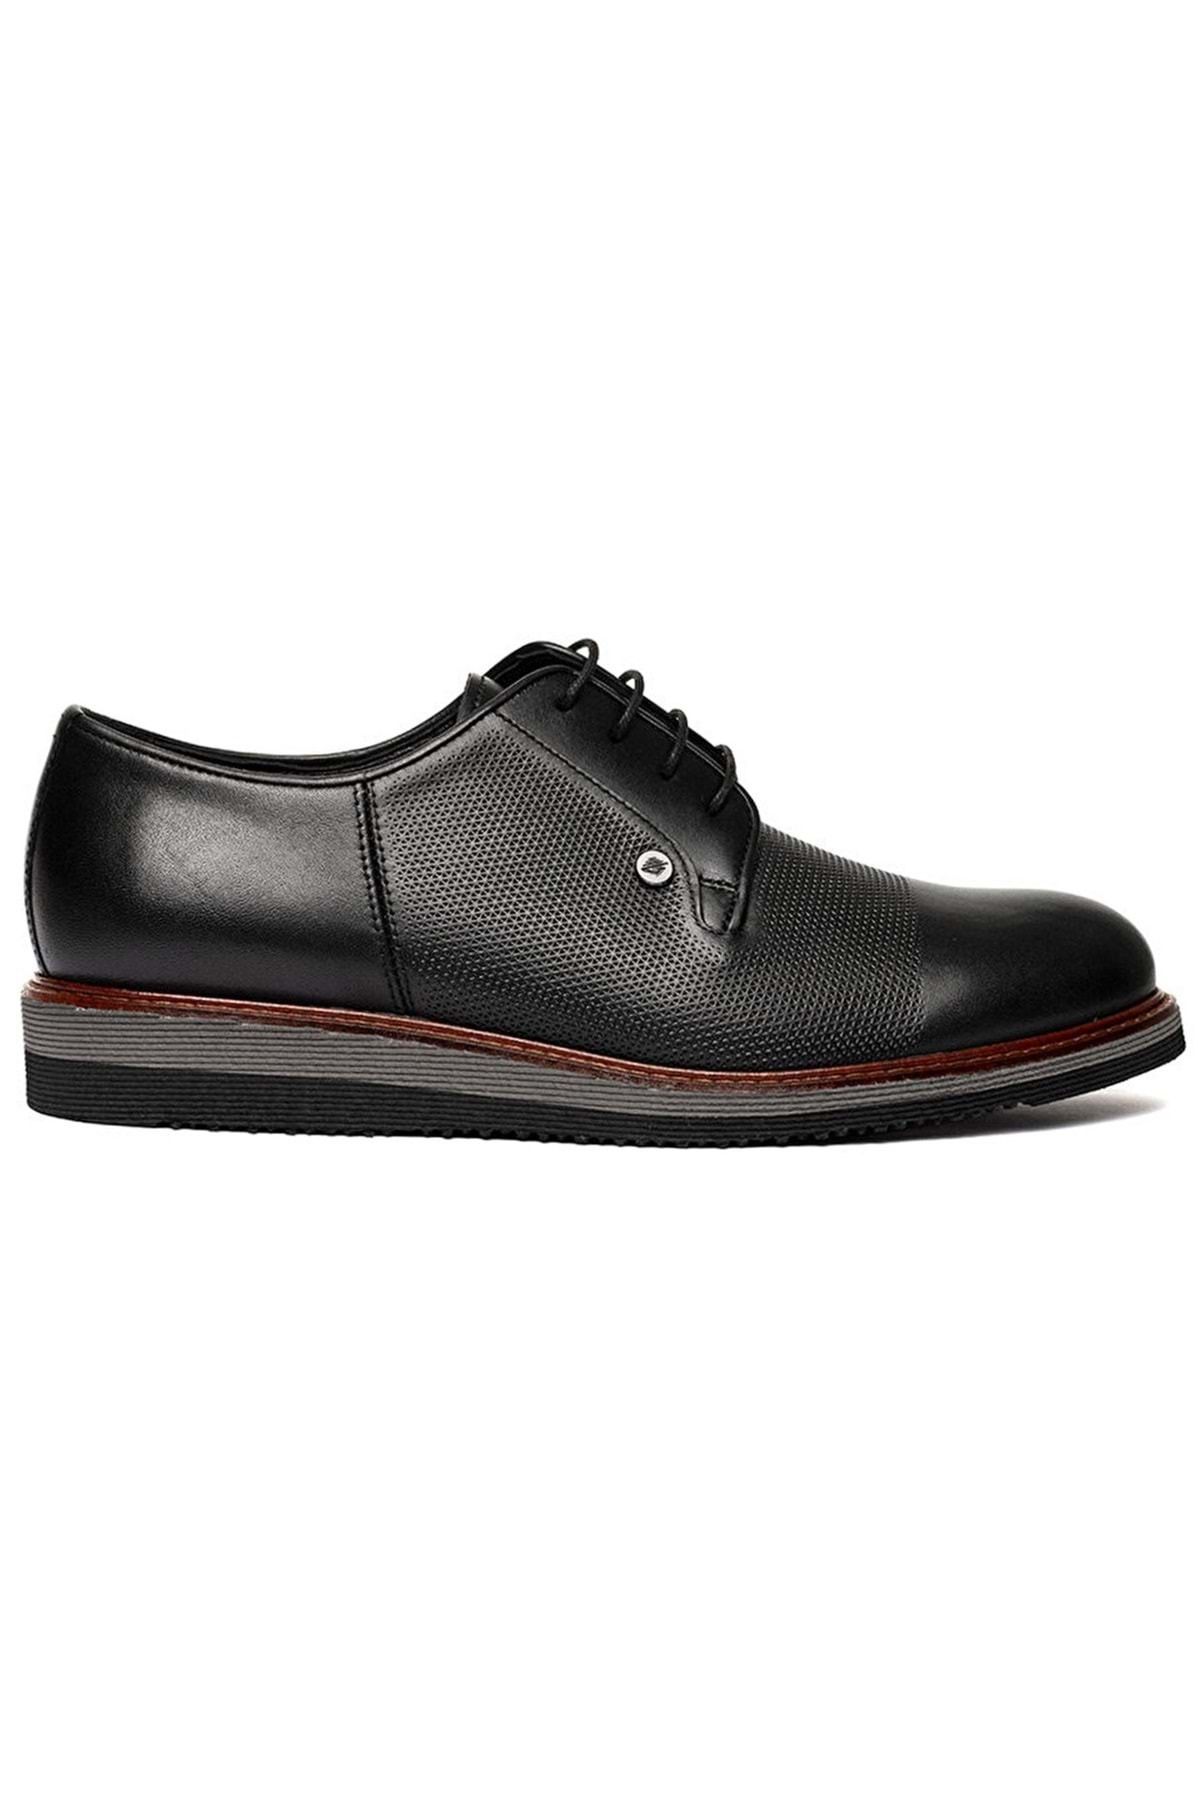 Greyder Erkek Siyah Hakiki Deri Klasik Ayakkabı 3k1ka75130